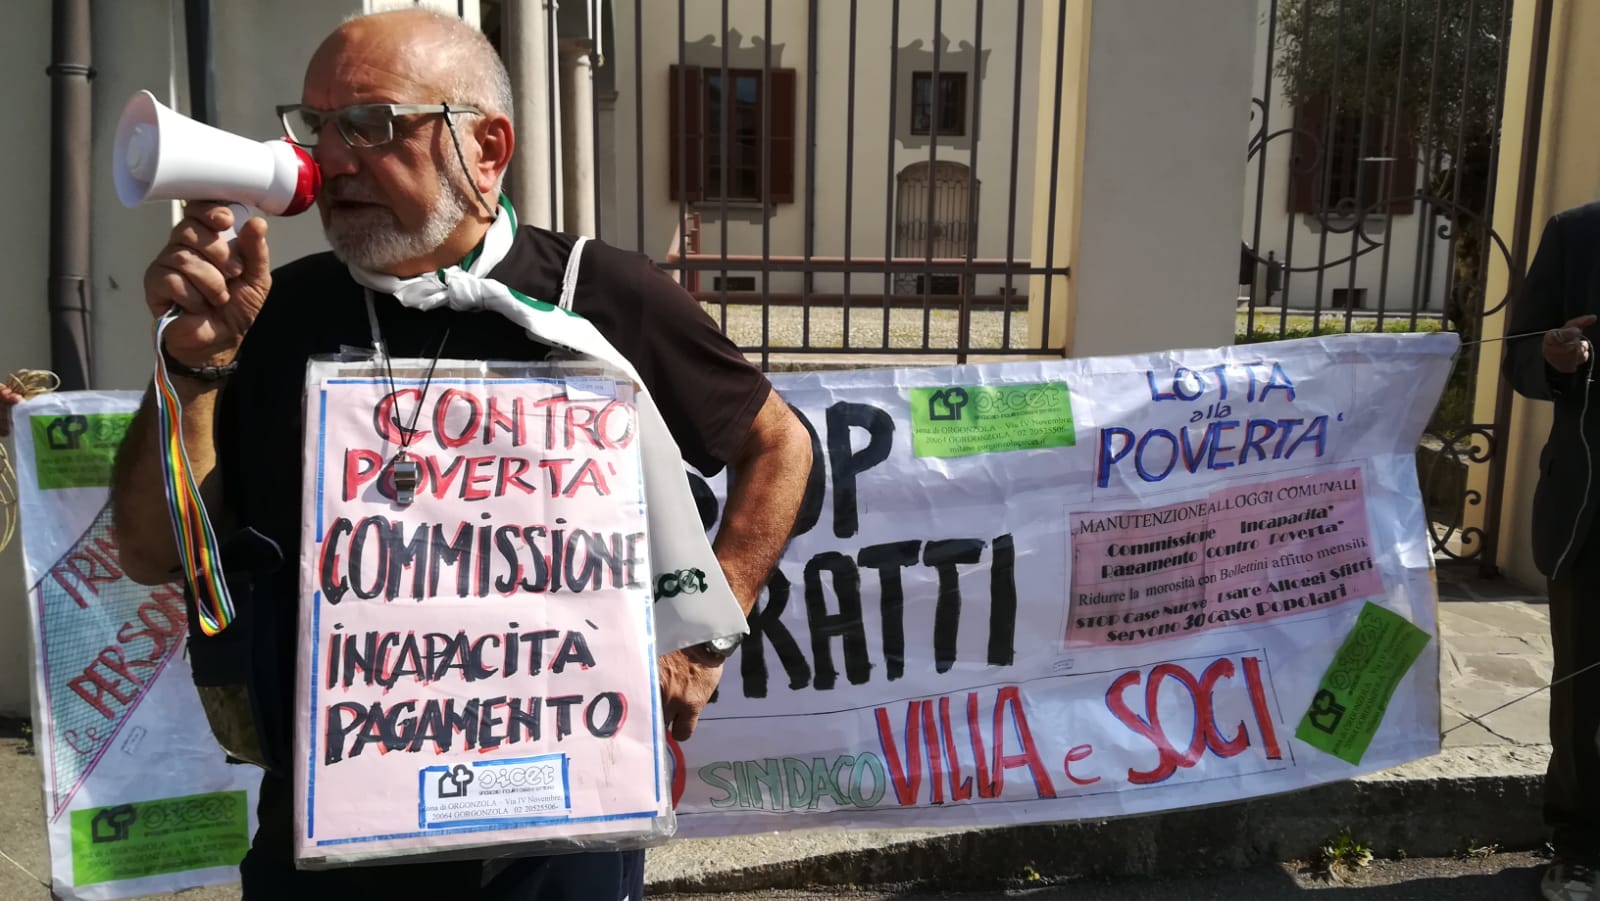 Manifestazione sotto il Municipio di Trezzo del Sicet contro gli sfratti alle famiglie morose che vivono nelle case comunali